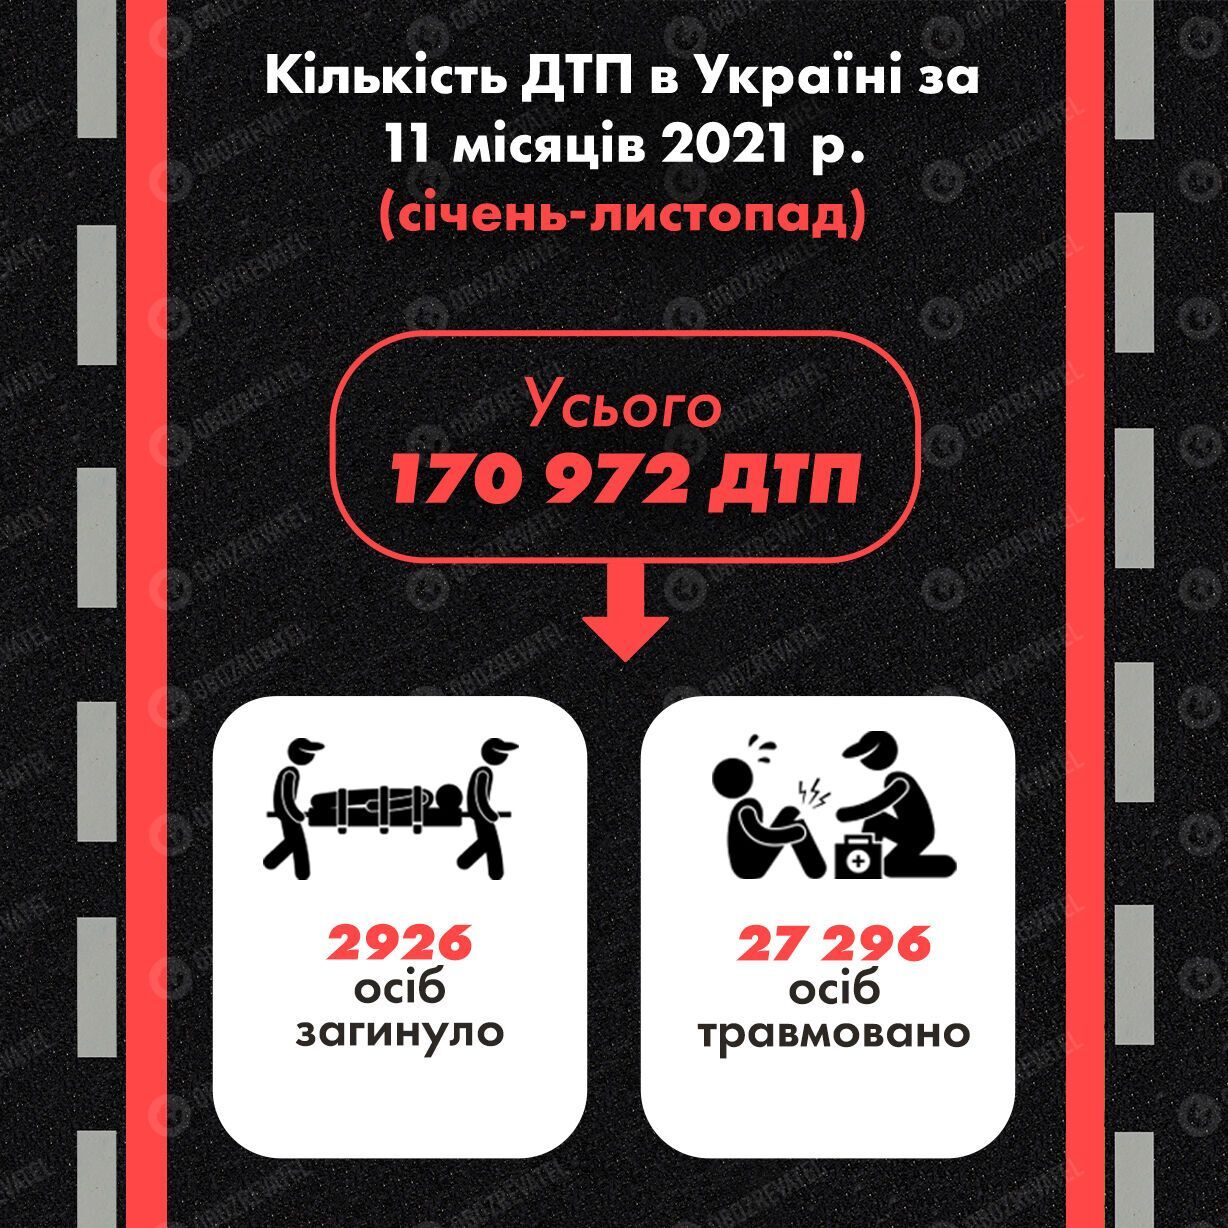 Статистика ДТП в Украине в 2021 году